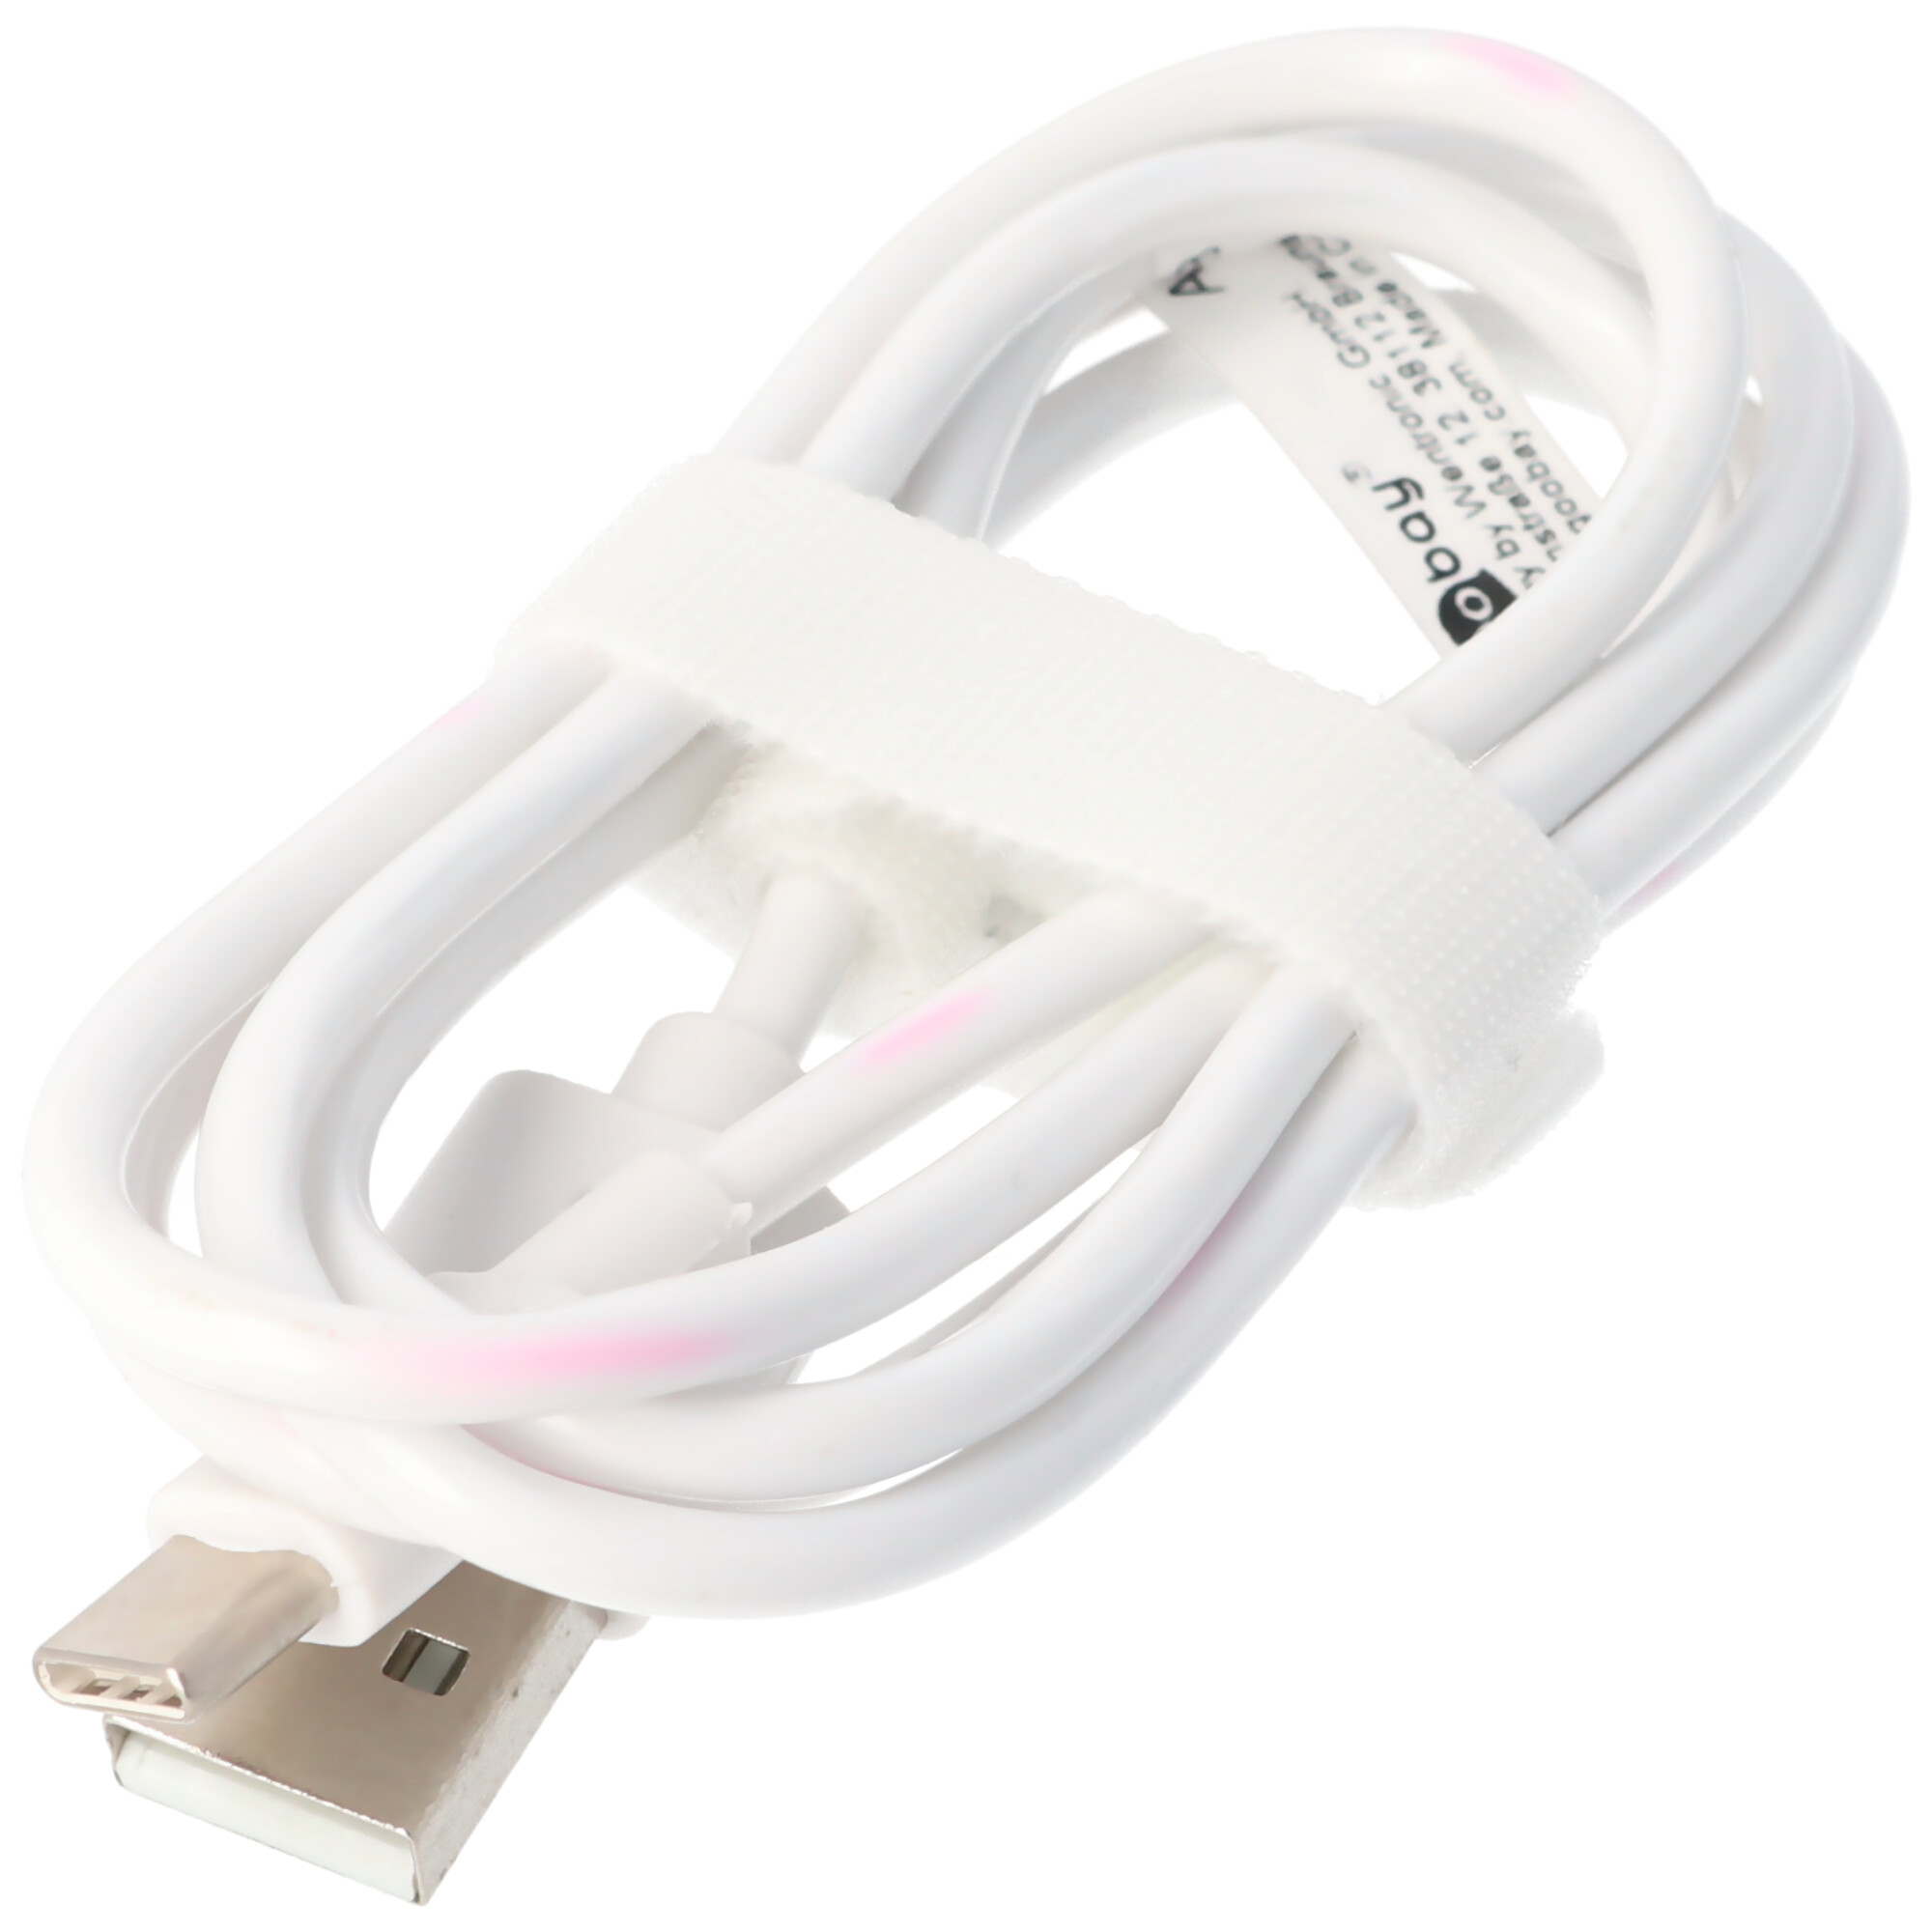 USB-C Lade- und Synchronisationskabel für alle Geräte mit USB-C Anschluss, weiß